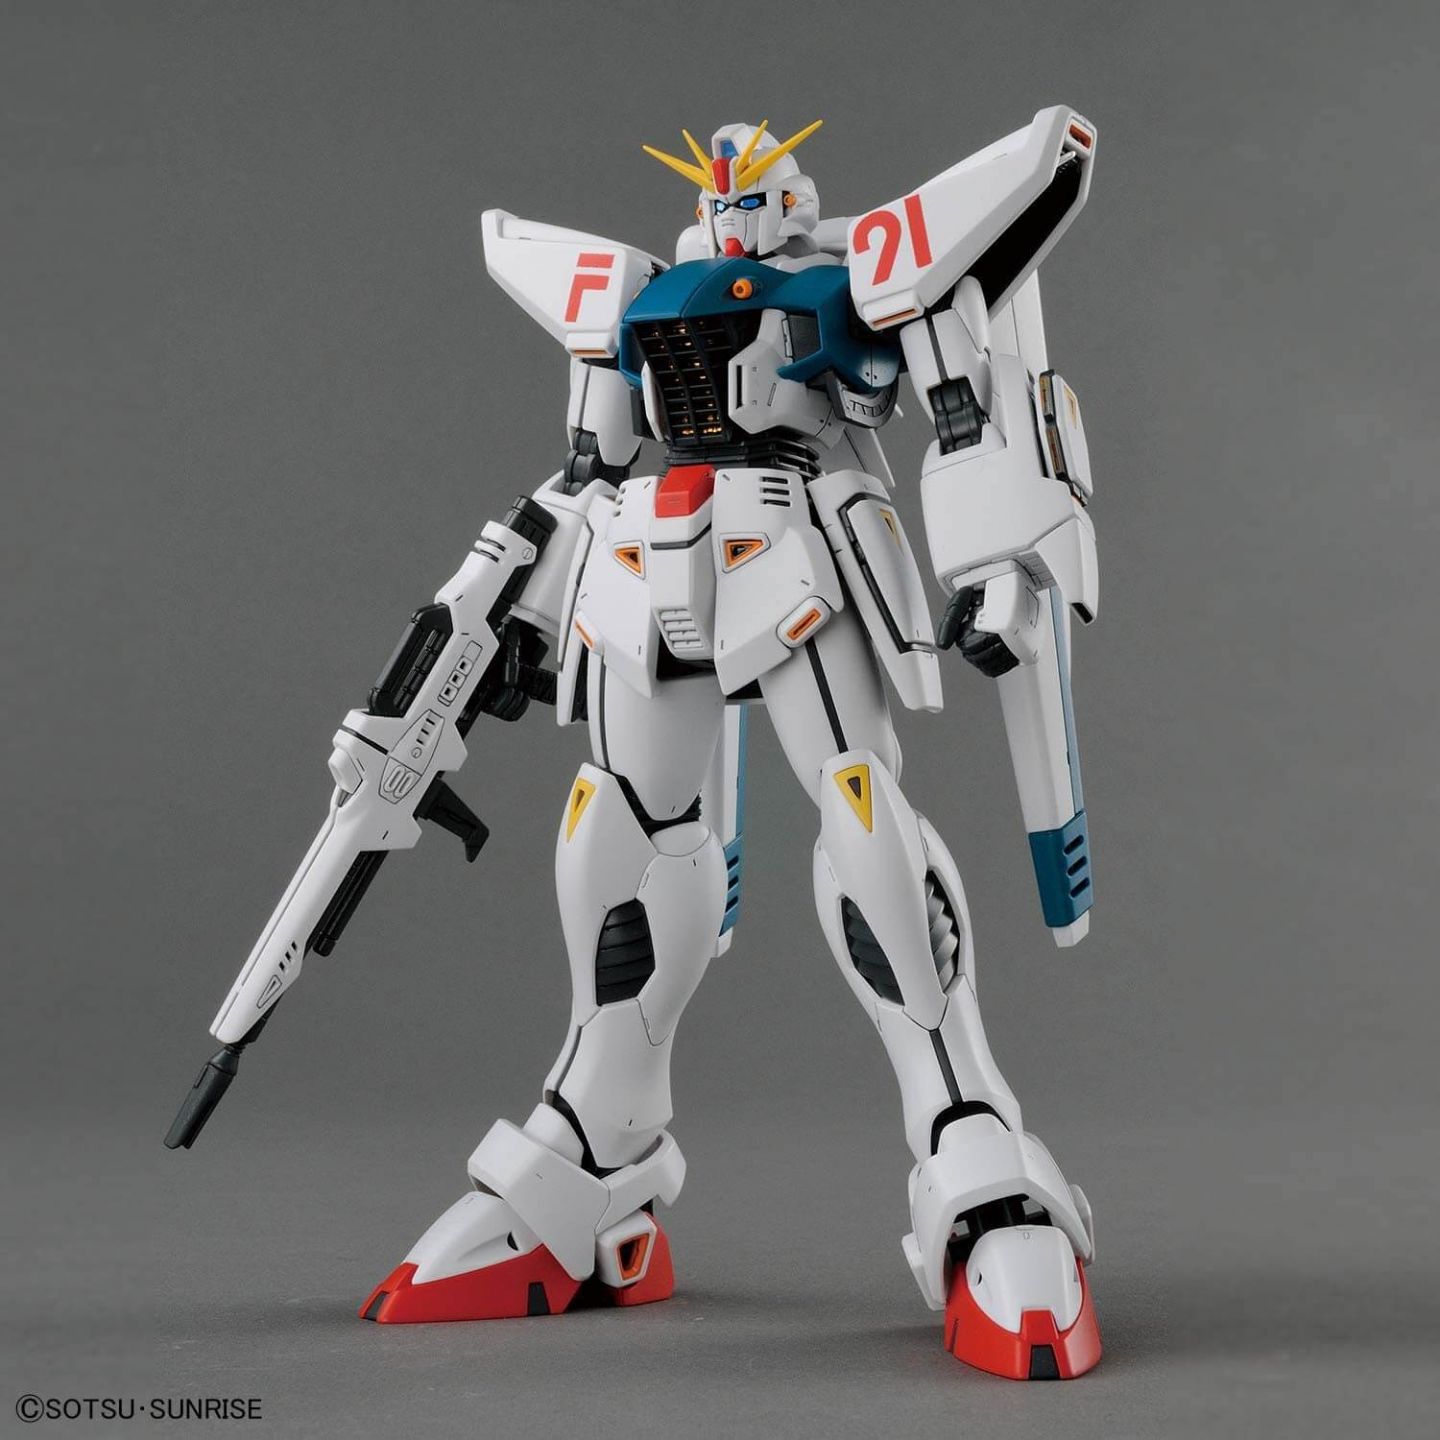 BANDAI MG Mobile Suit Gundam F91 Gundam F91 ver2.0 Model Kit